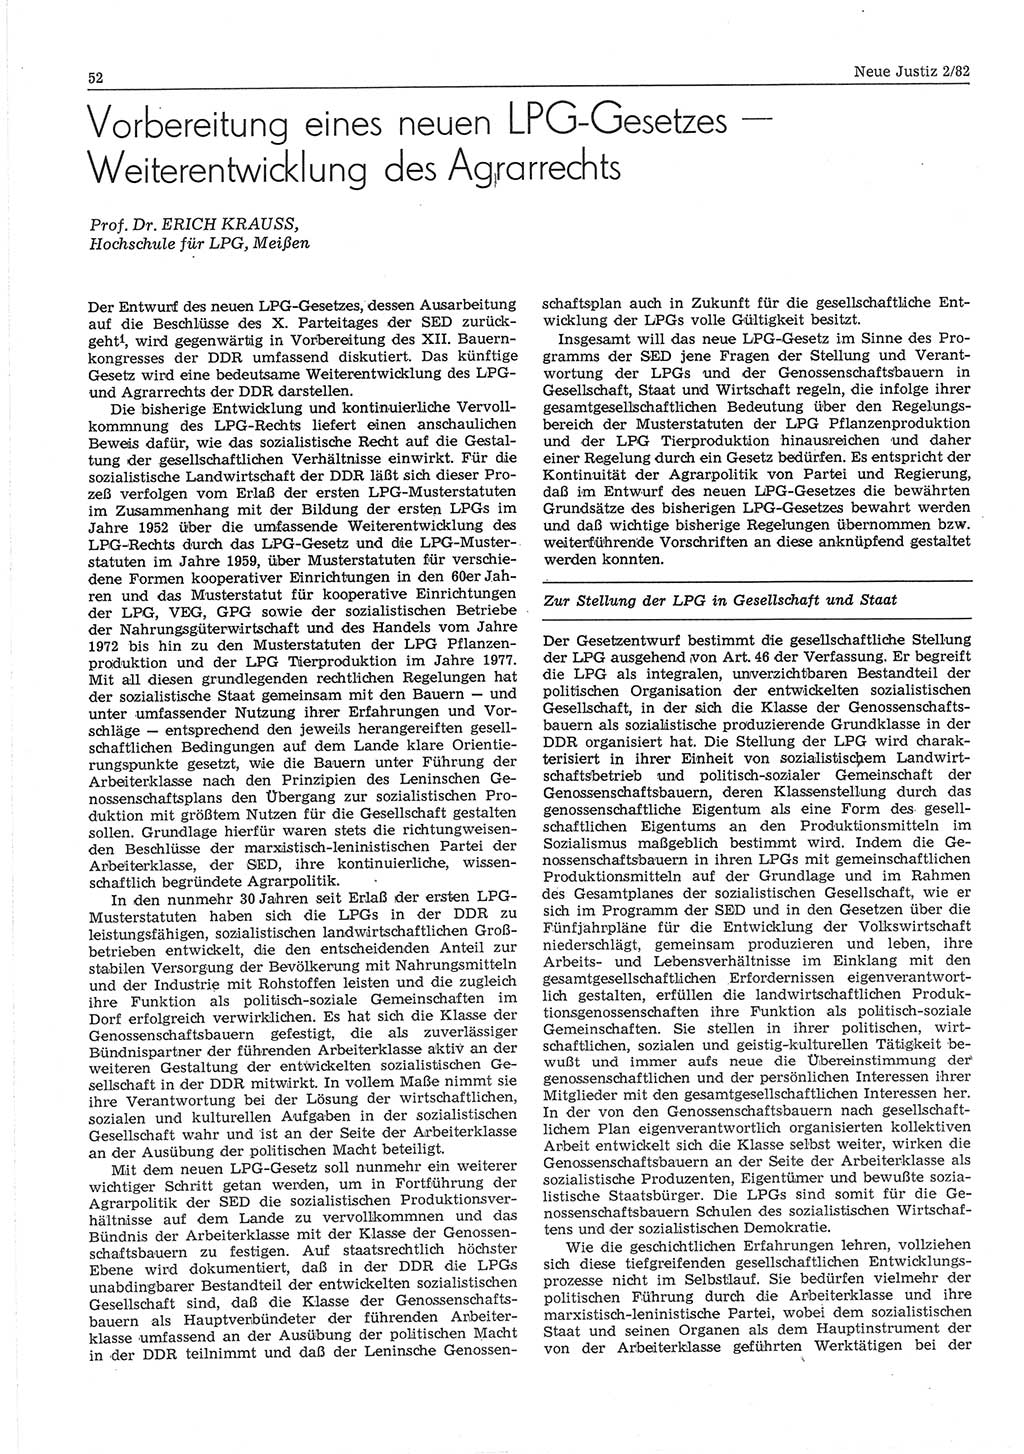 Neue Justiz (NJ), Zeitschrift für sozialistisches Recht und Gesetzlichkeit [Deutsche Demokratische Republik (DDR)], 36. Jahrgang 1982, Seite 52 (NJ DDR 1982, S. 52)